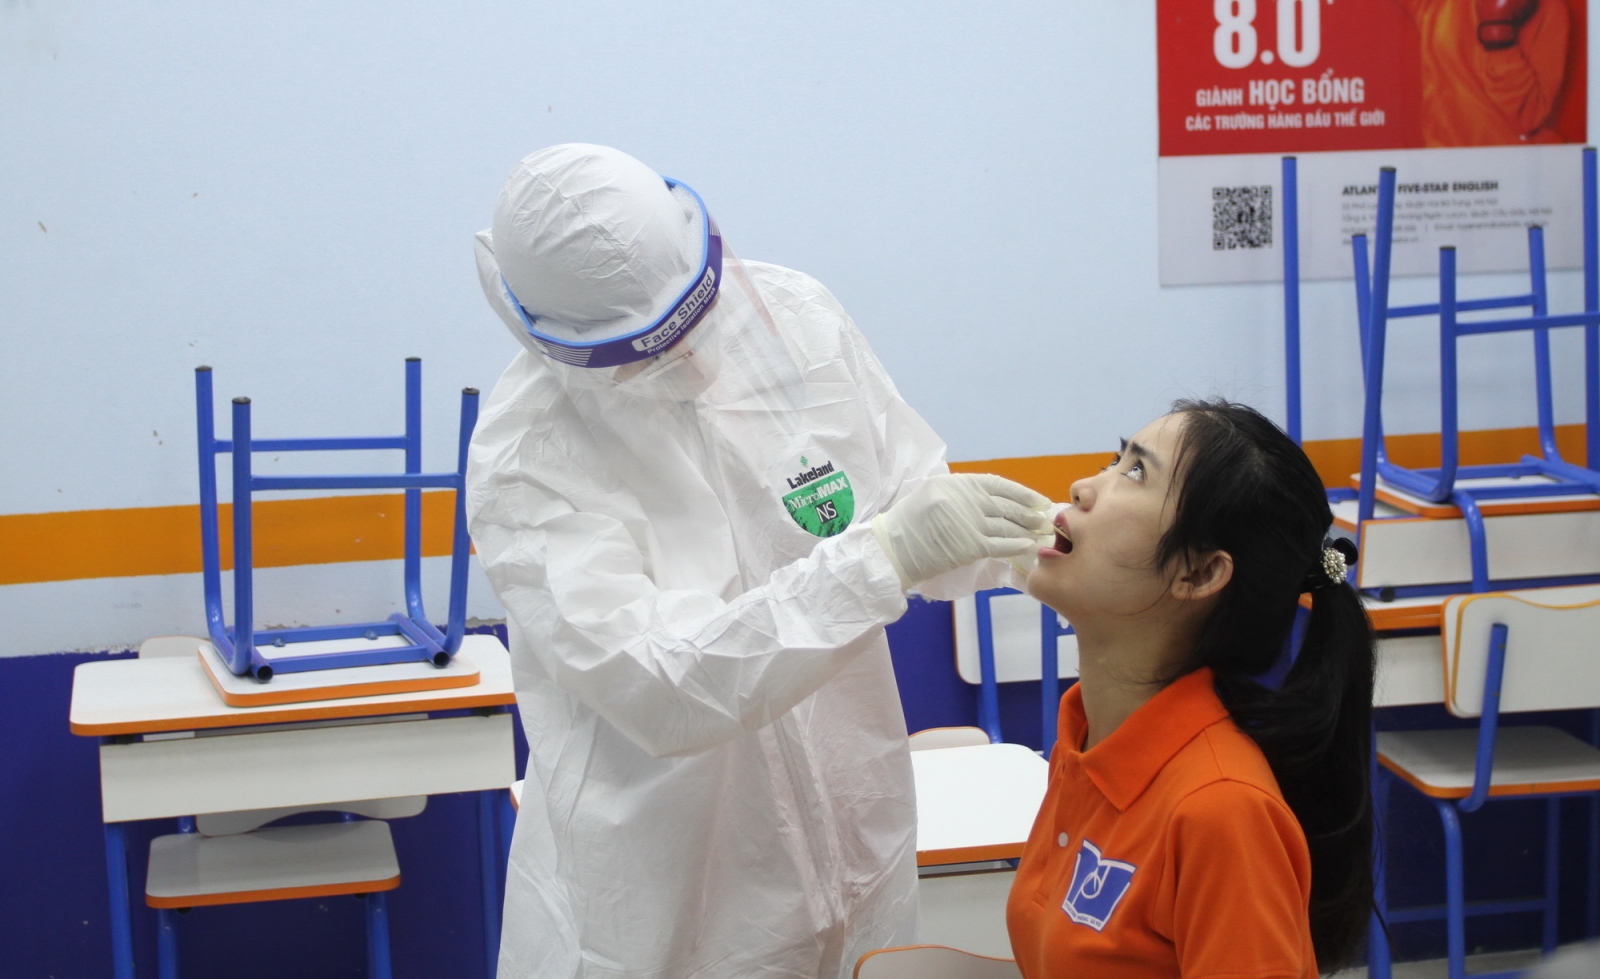 Hình ảnh diễn tập phòng, chống dịch Covid-19 tại các điểm thi vào lớp 10 ở Hà Nội